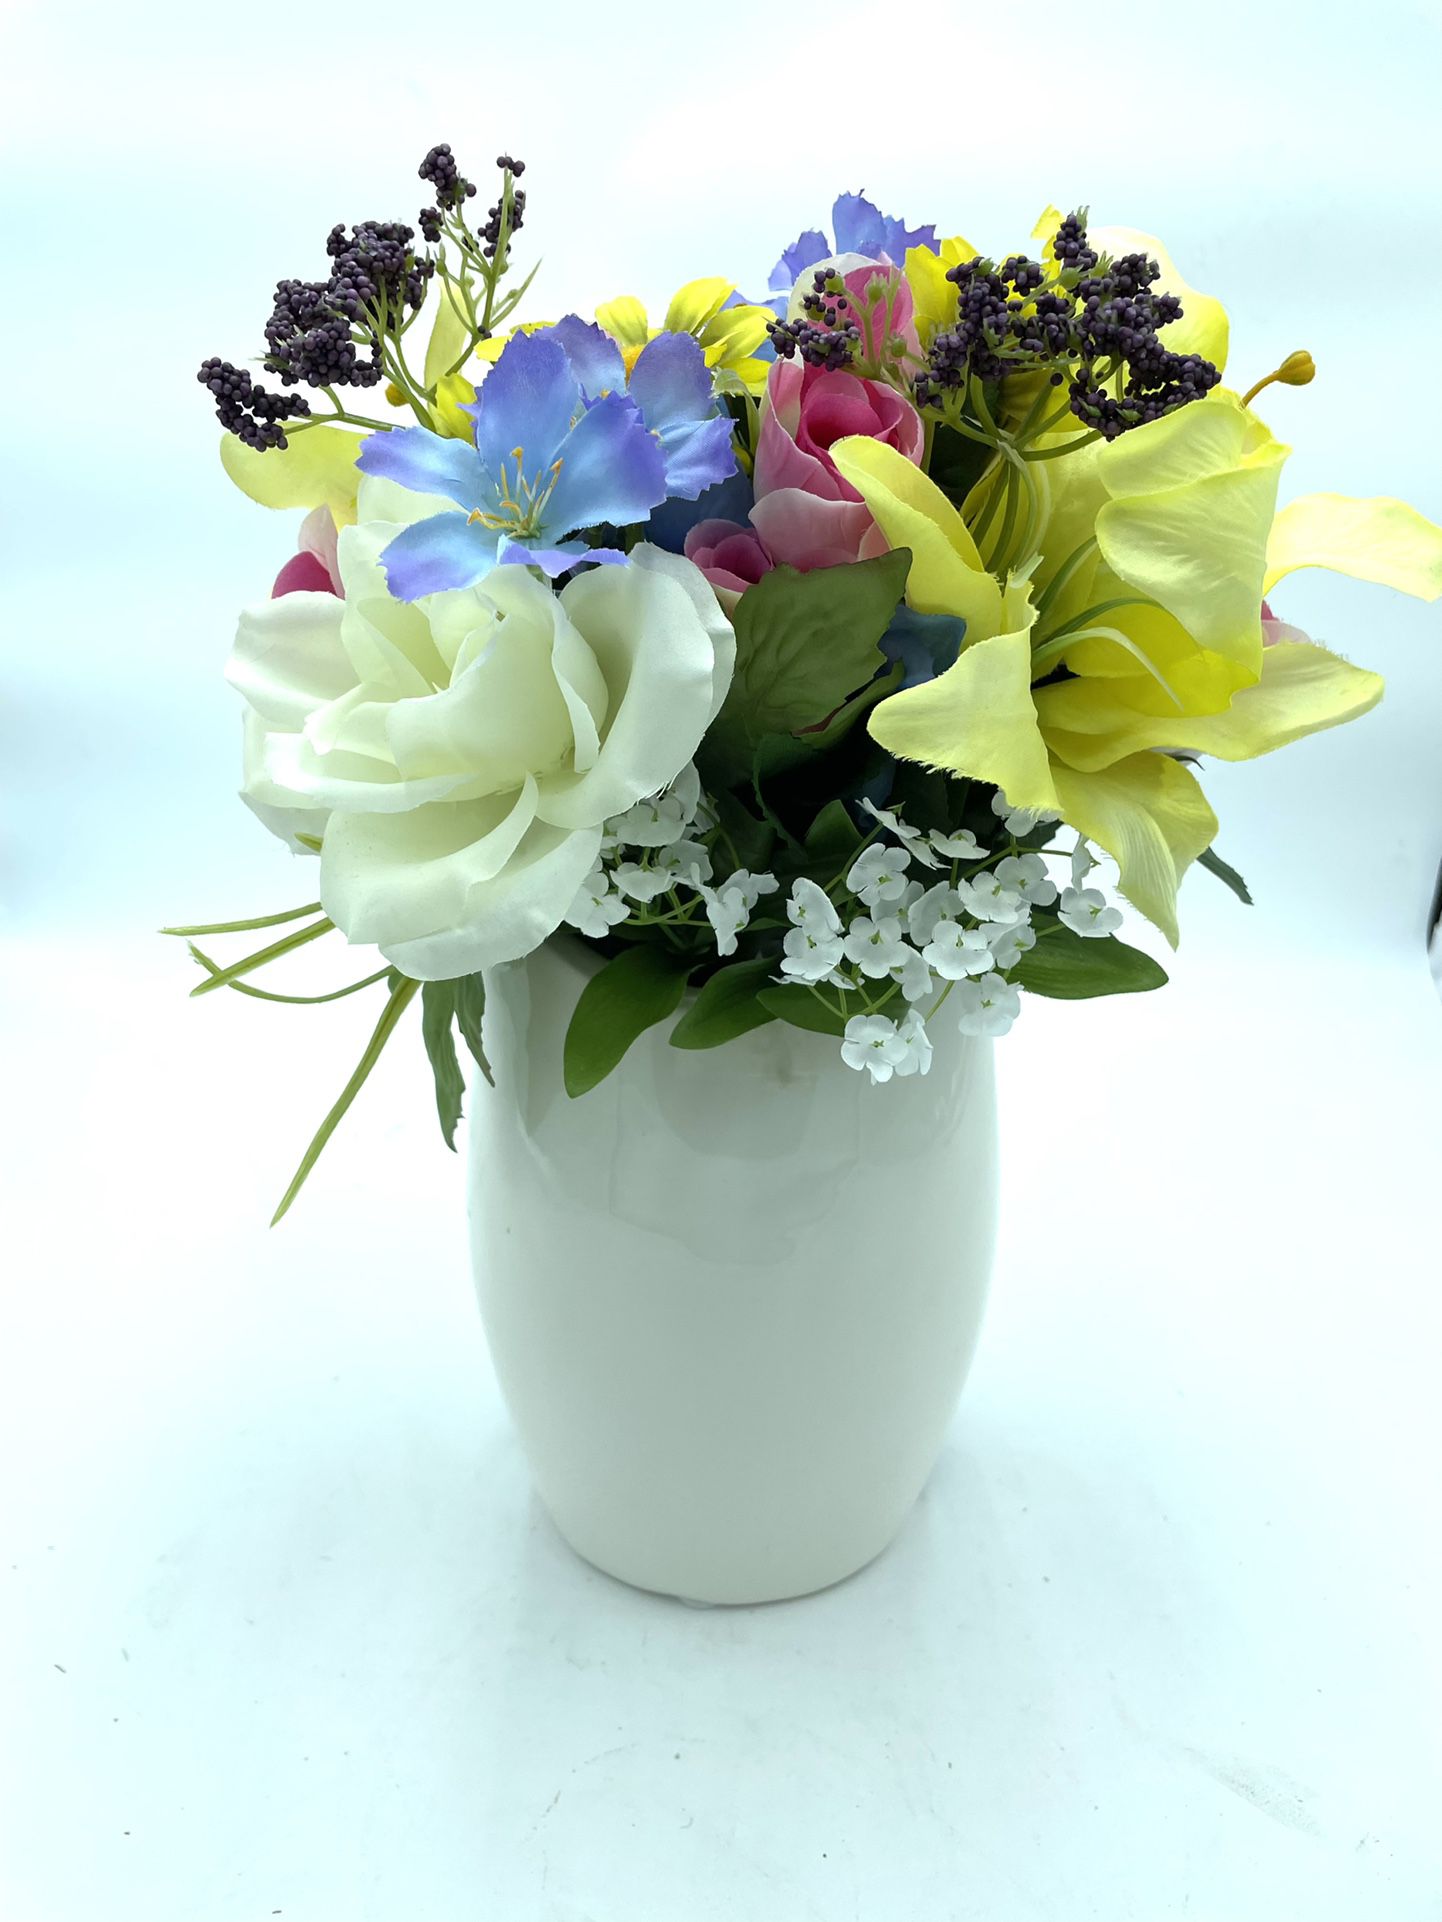 Ceramic Owl Vase With Faux Flower Arrangement 